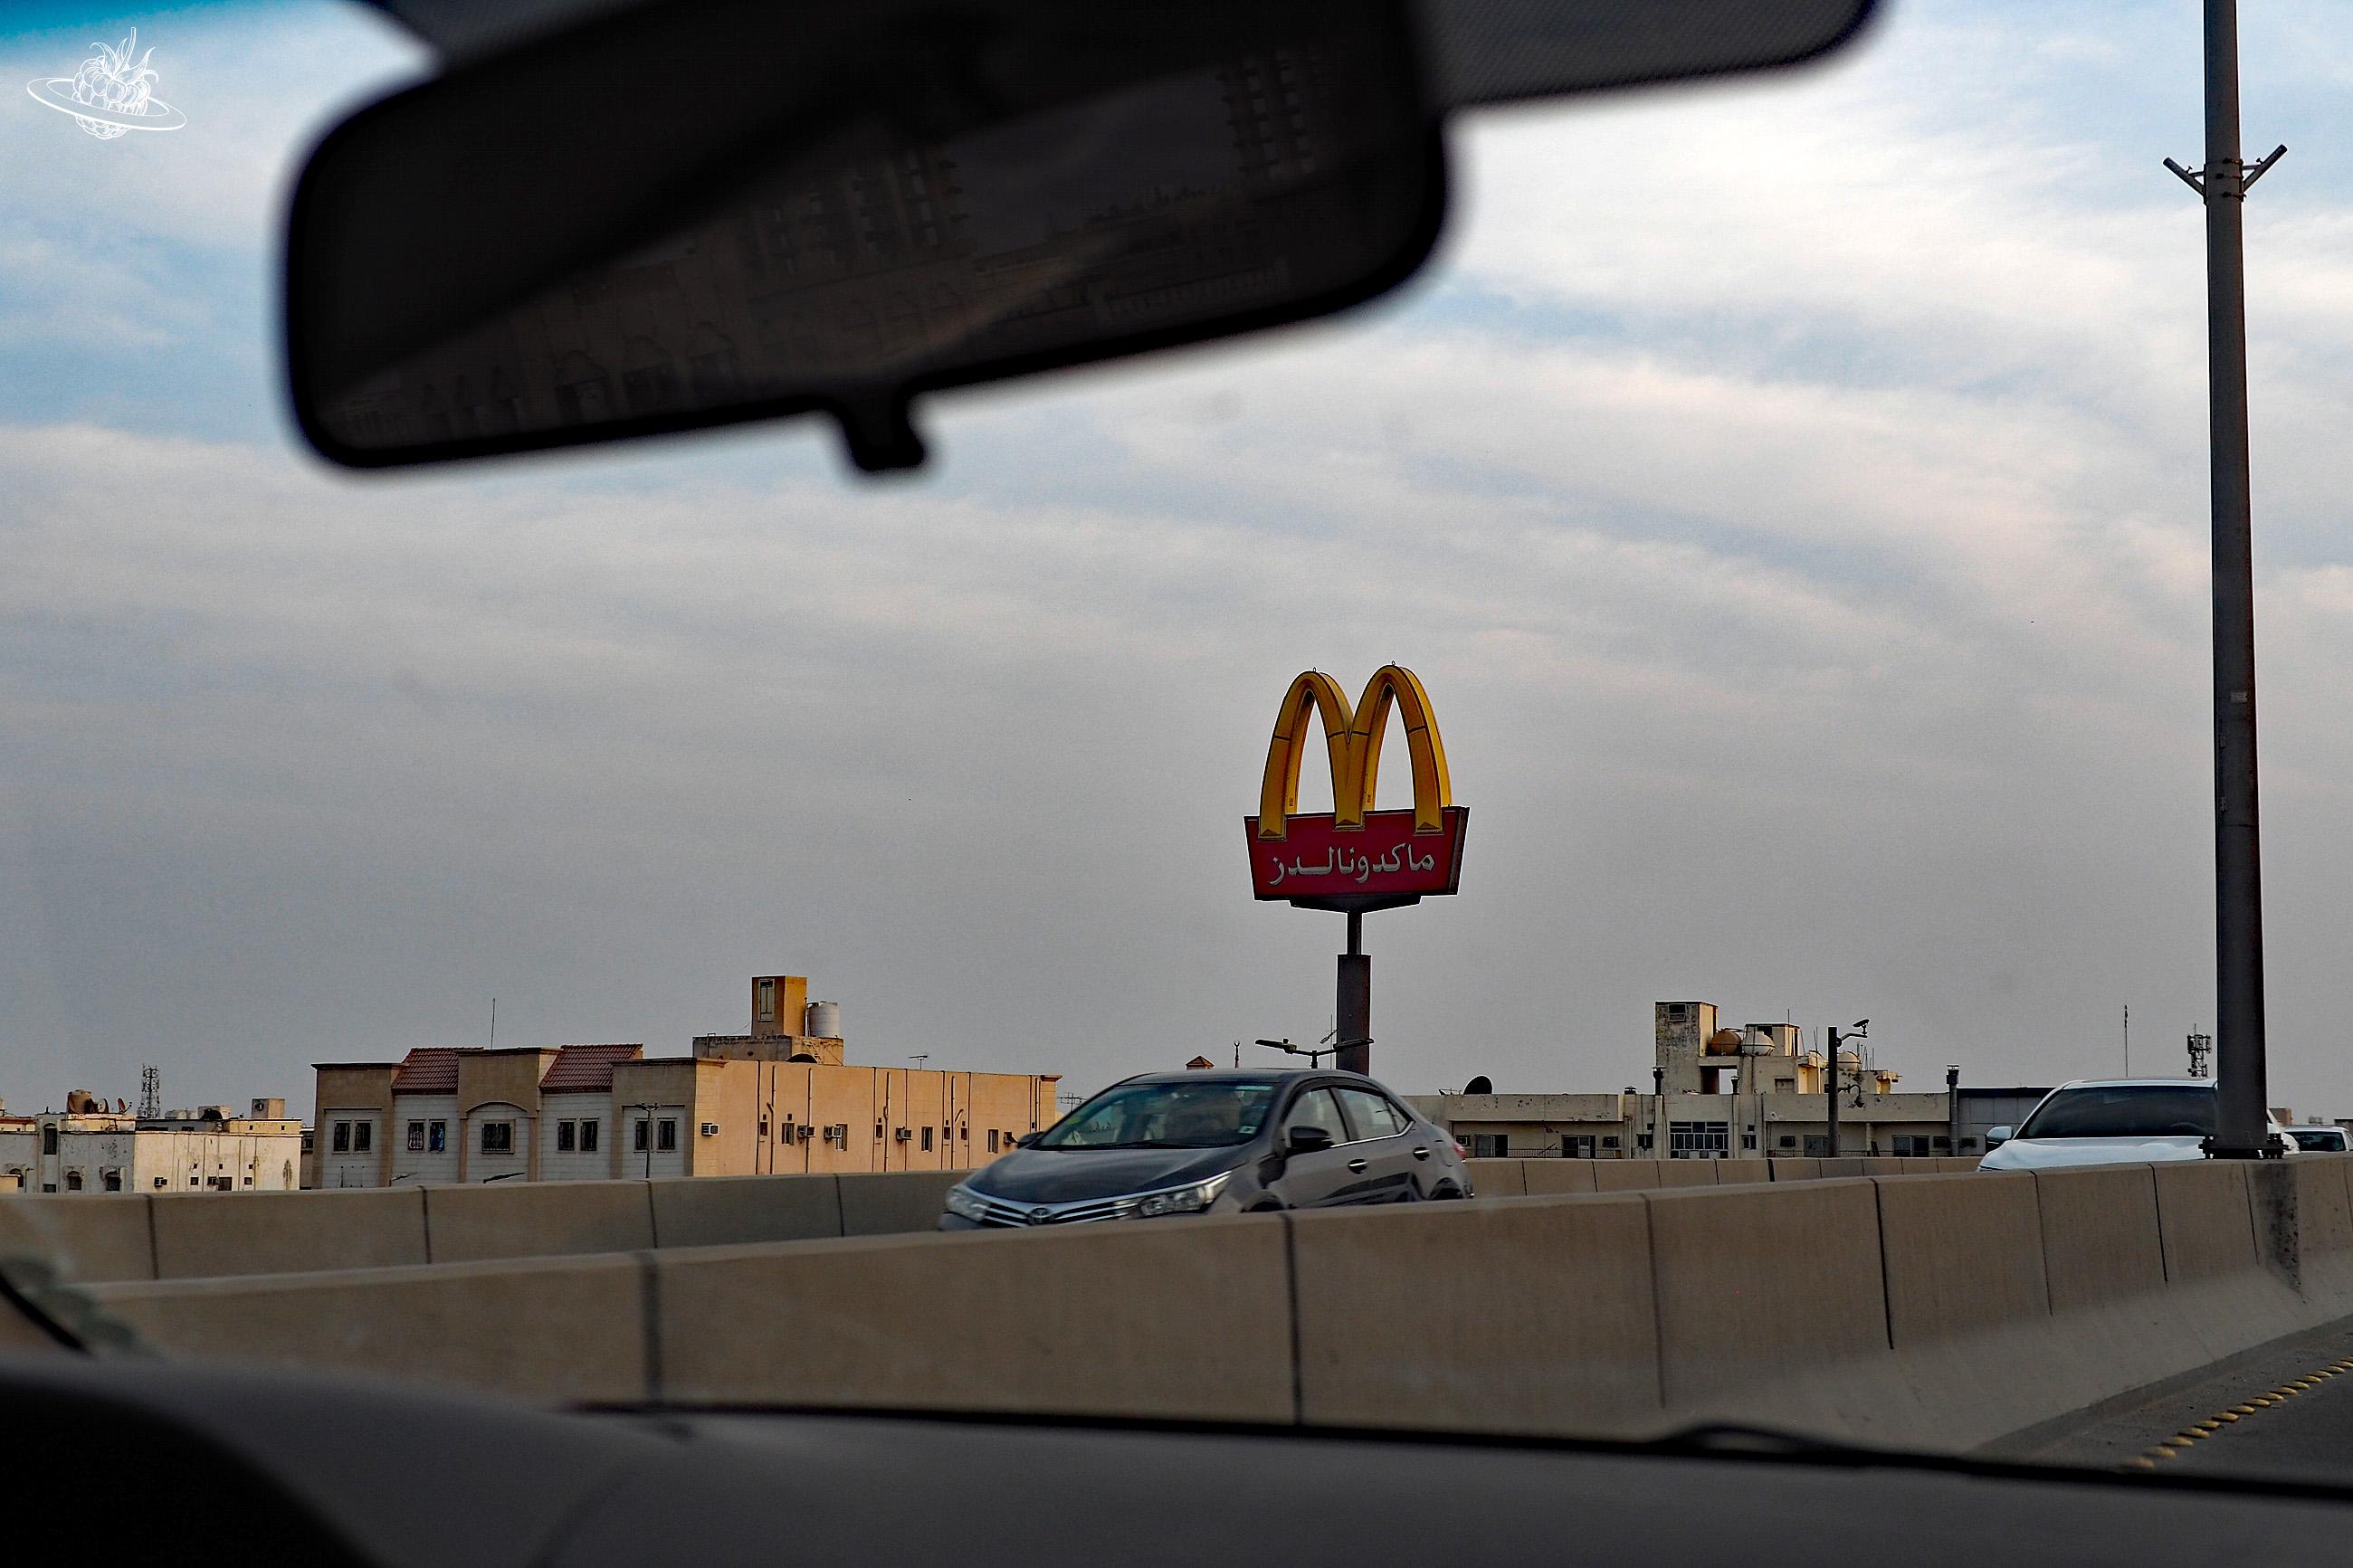 Das Logo von McDonald entlang der Strasse